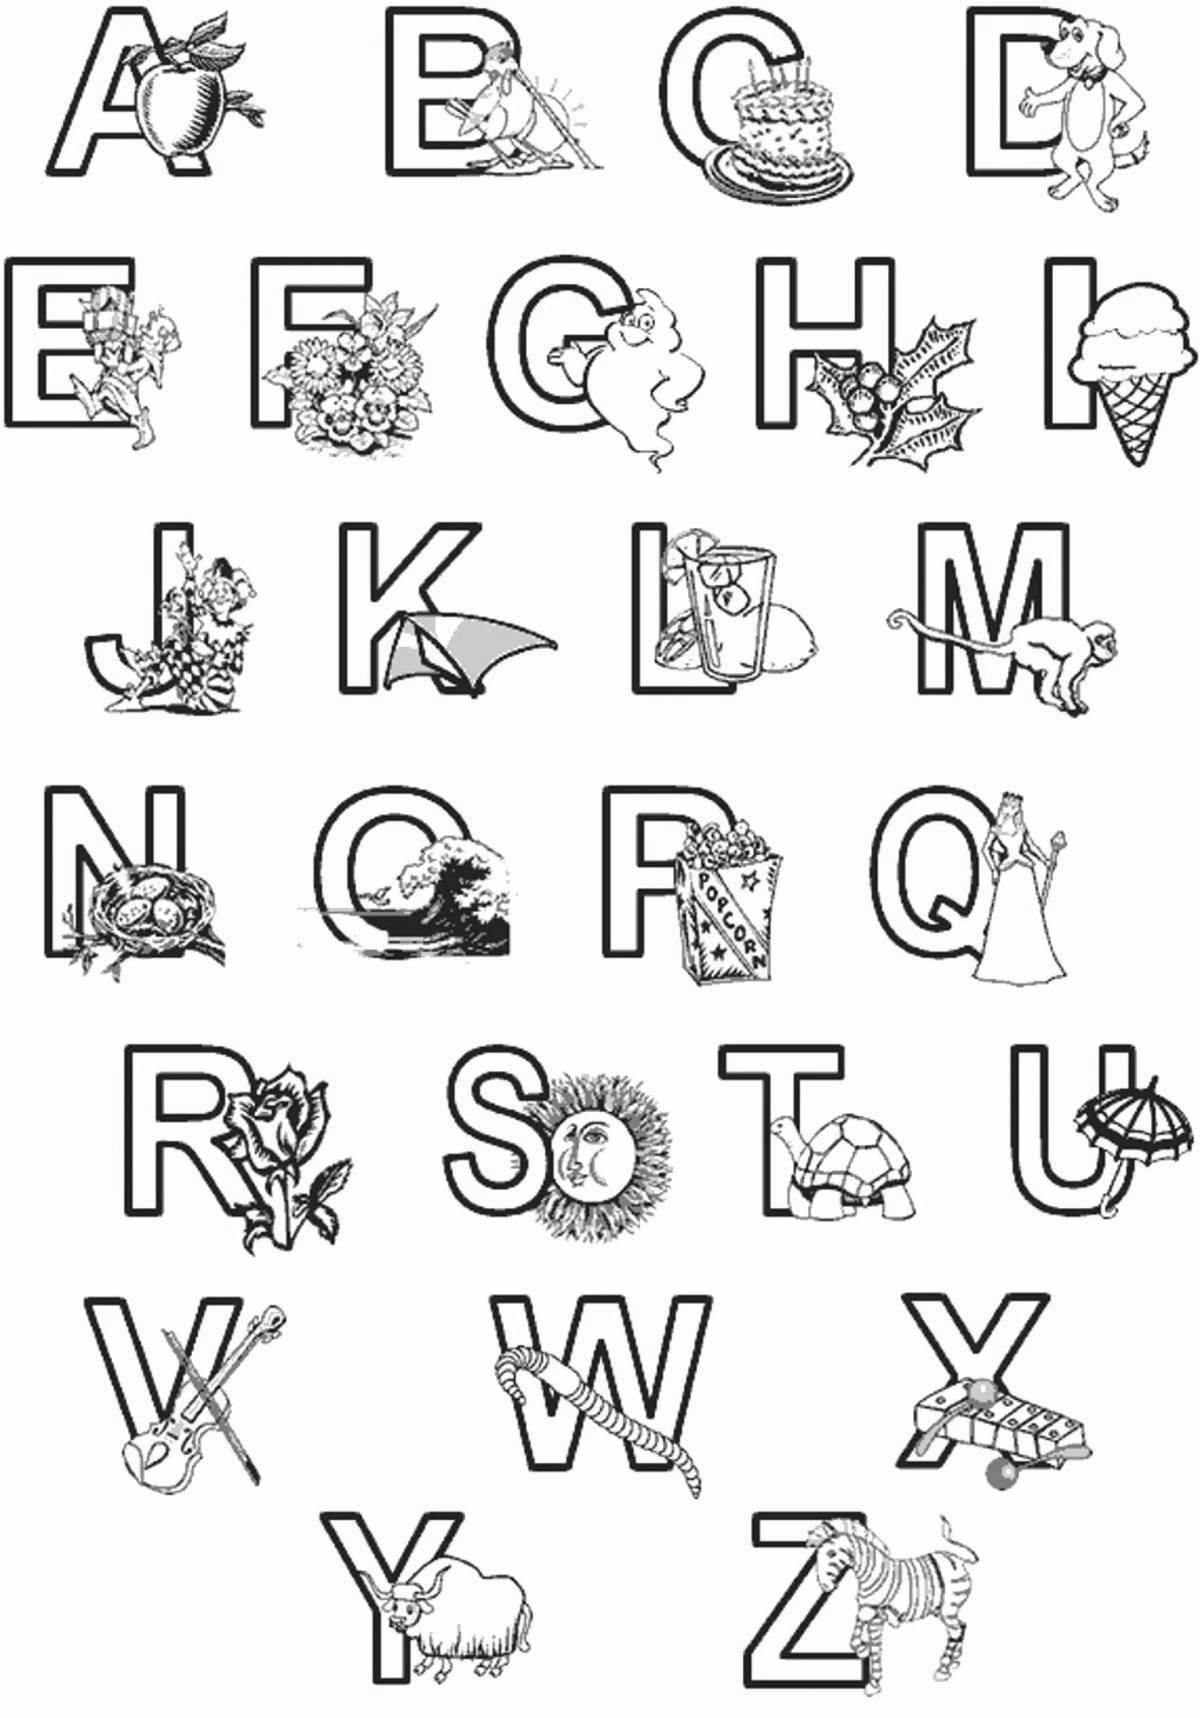 A fun alphabet coloring book